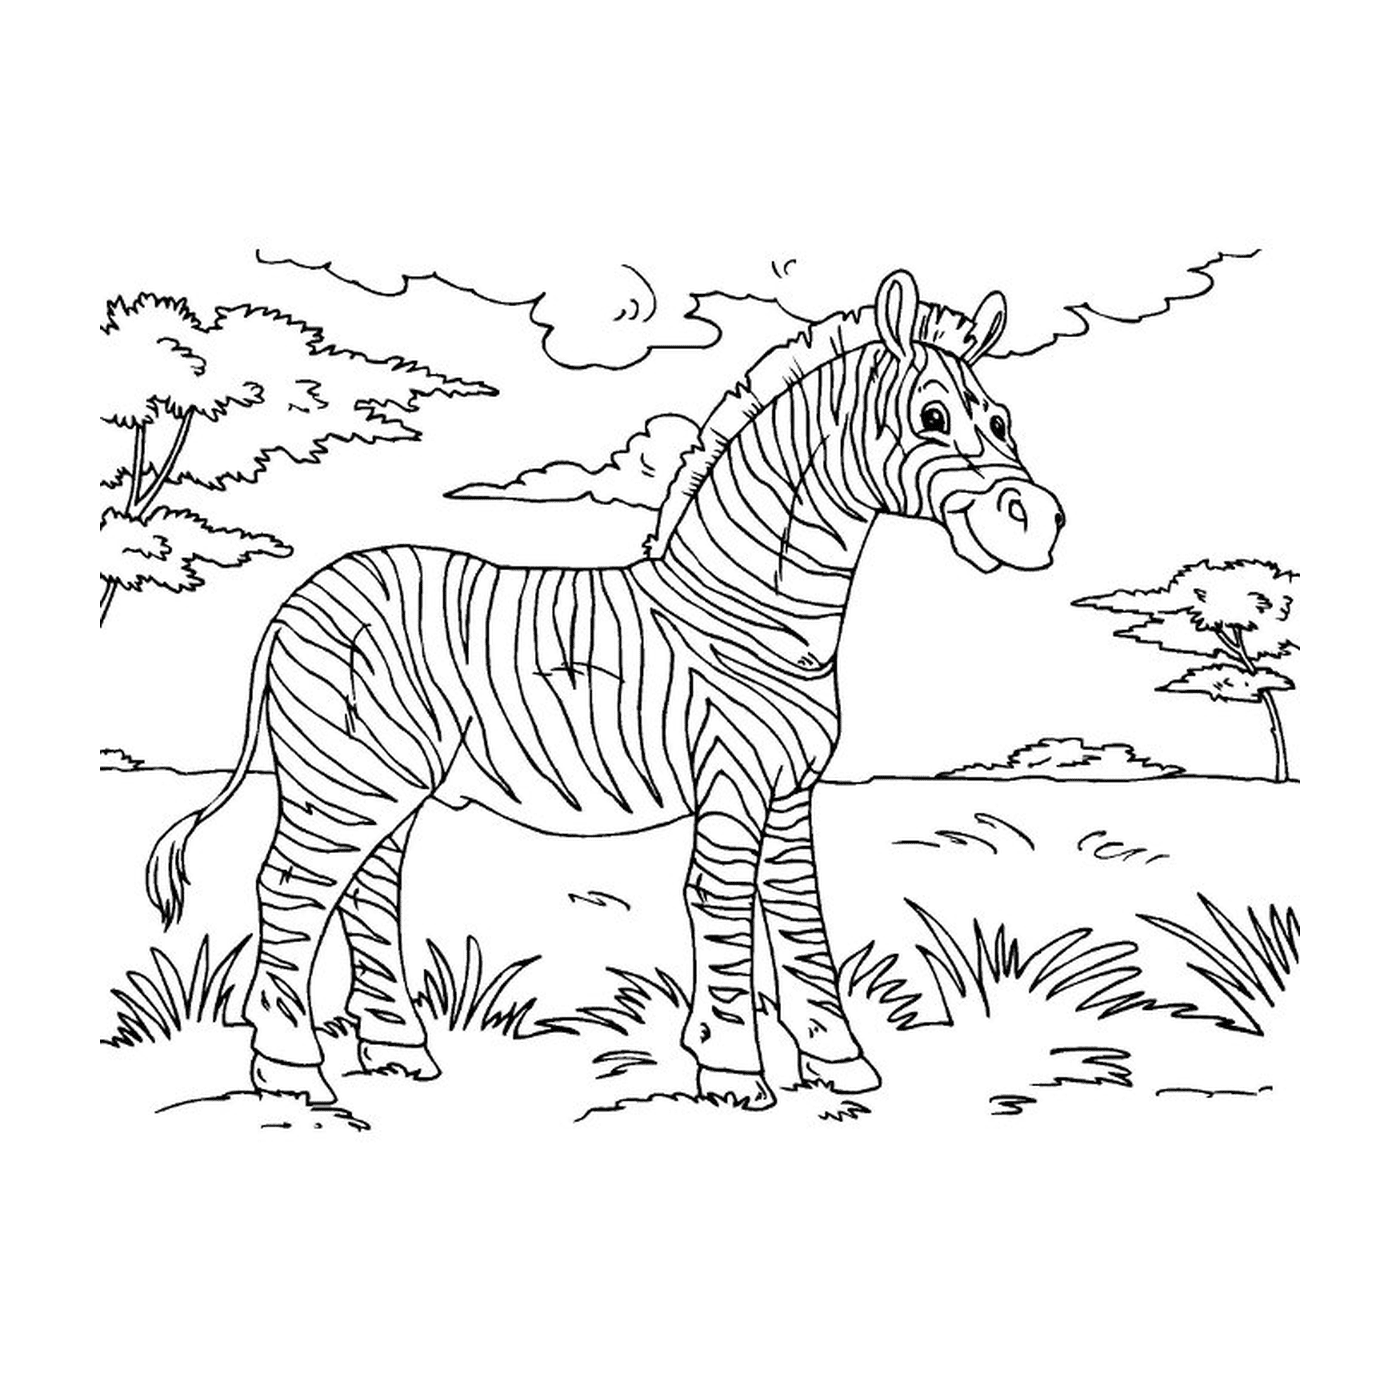  Peaceful Zebra in Nature 